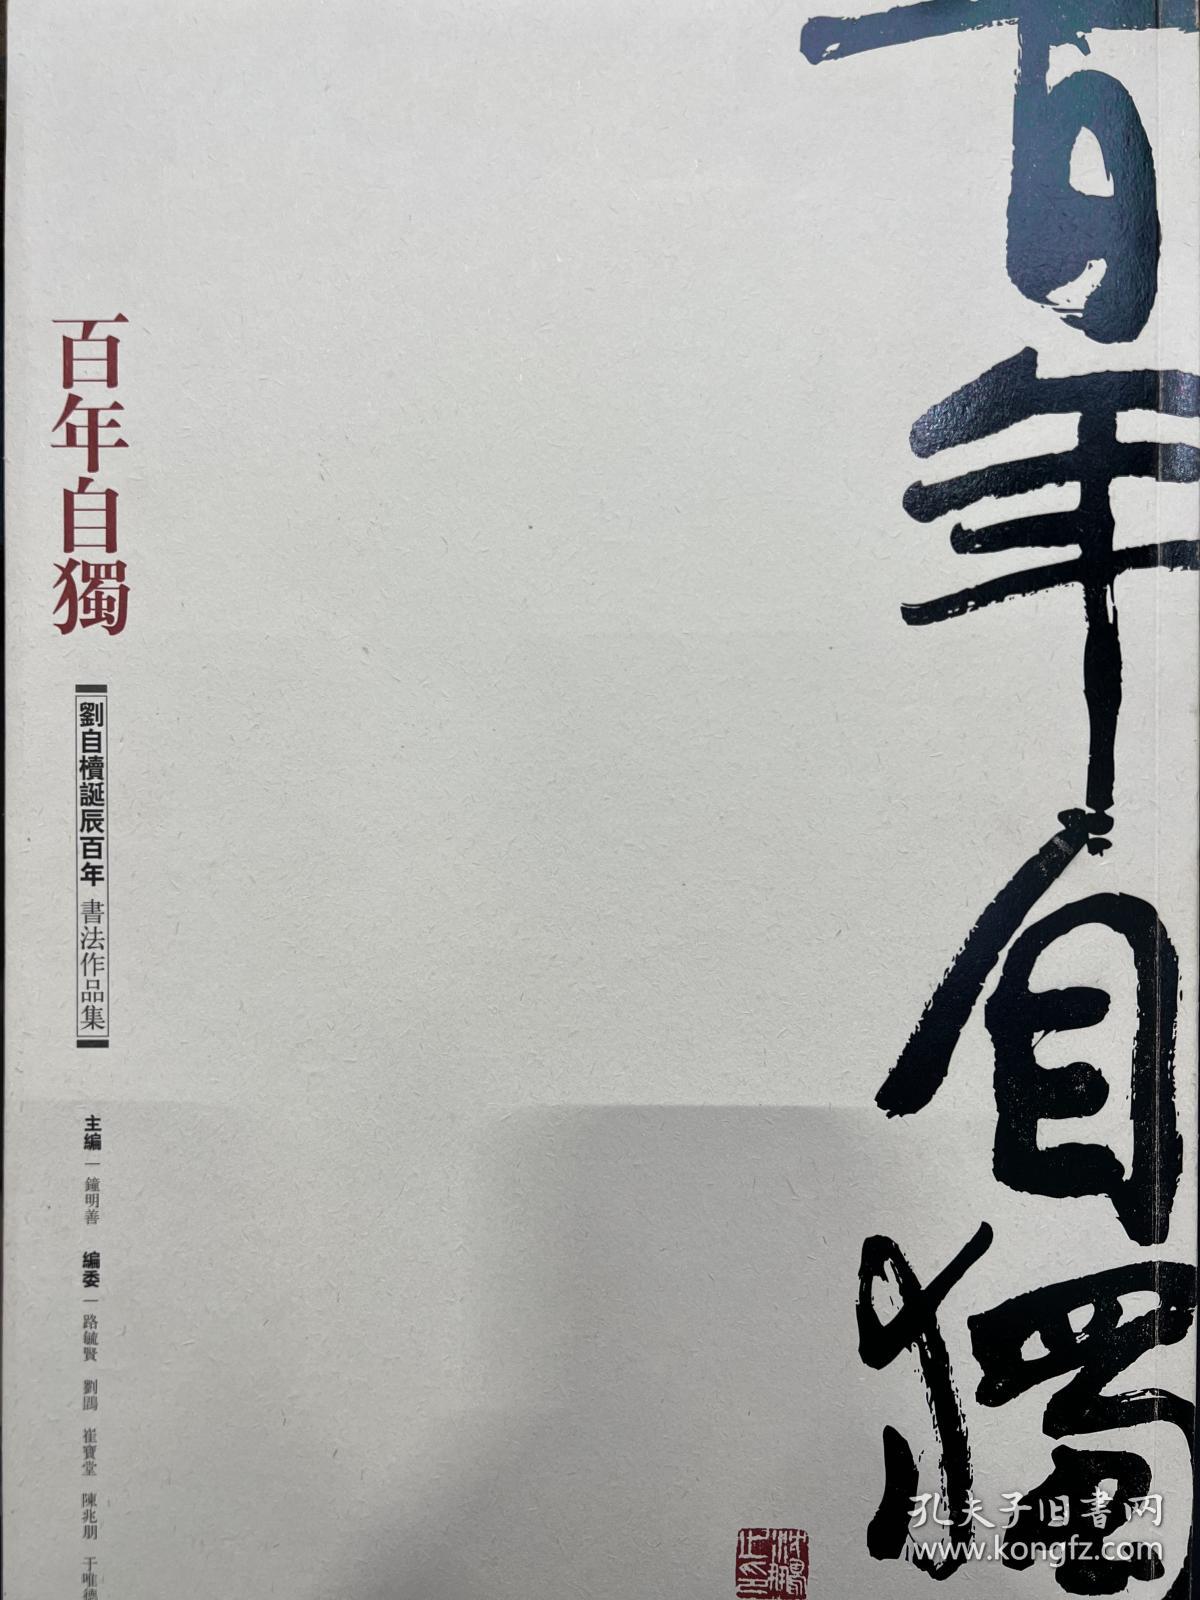 百年自独 : 刘自椟书法作品集